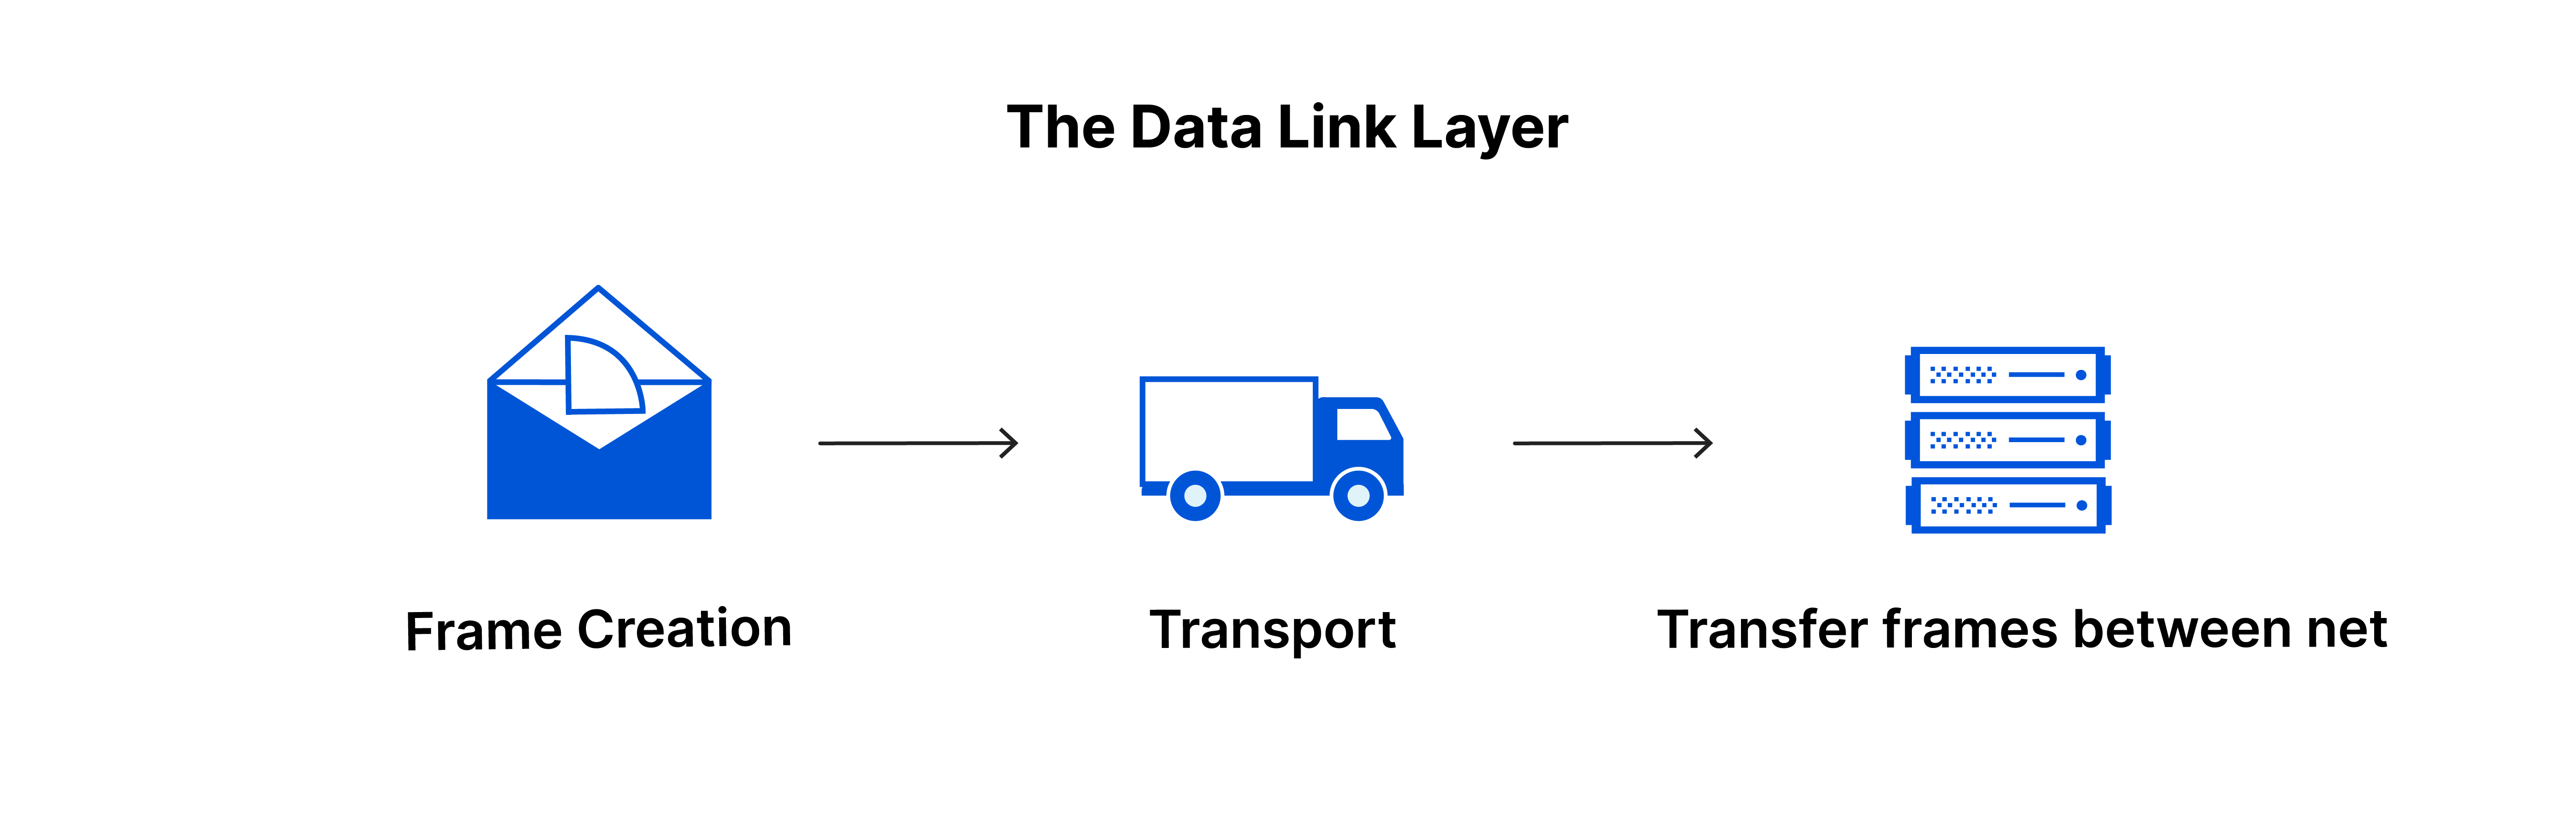 数据链路层：创建帧，在网络之间发送帧